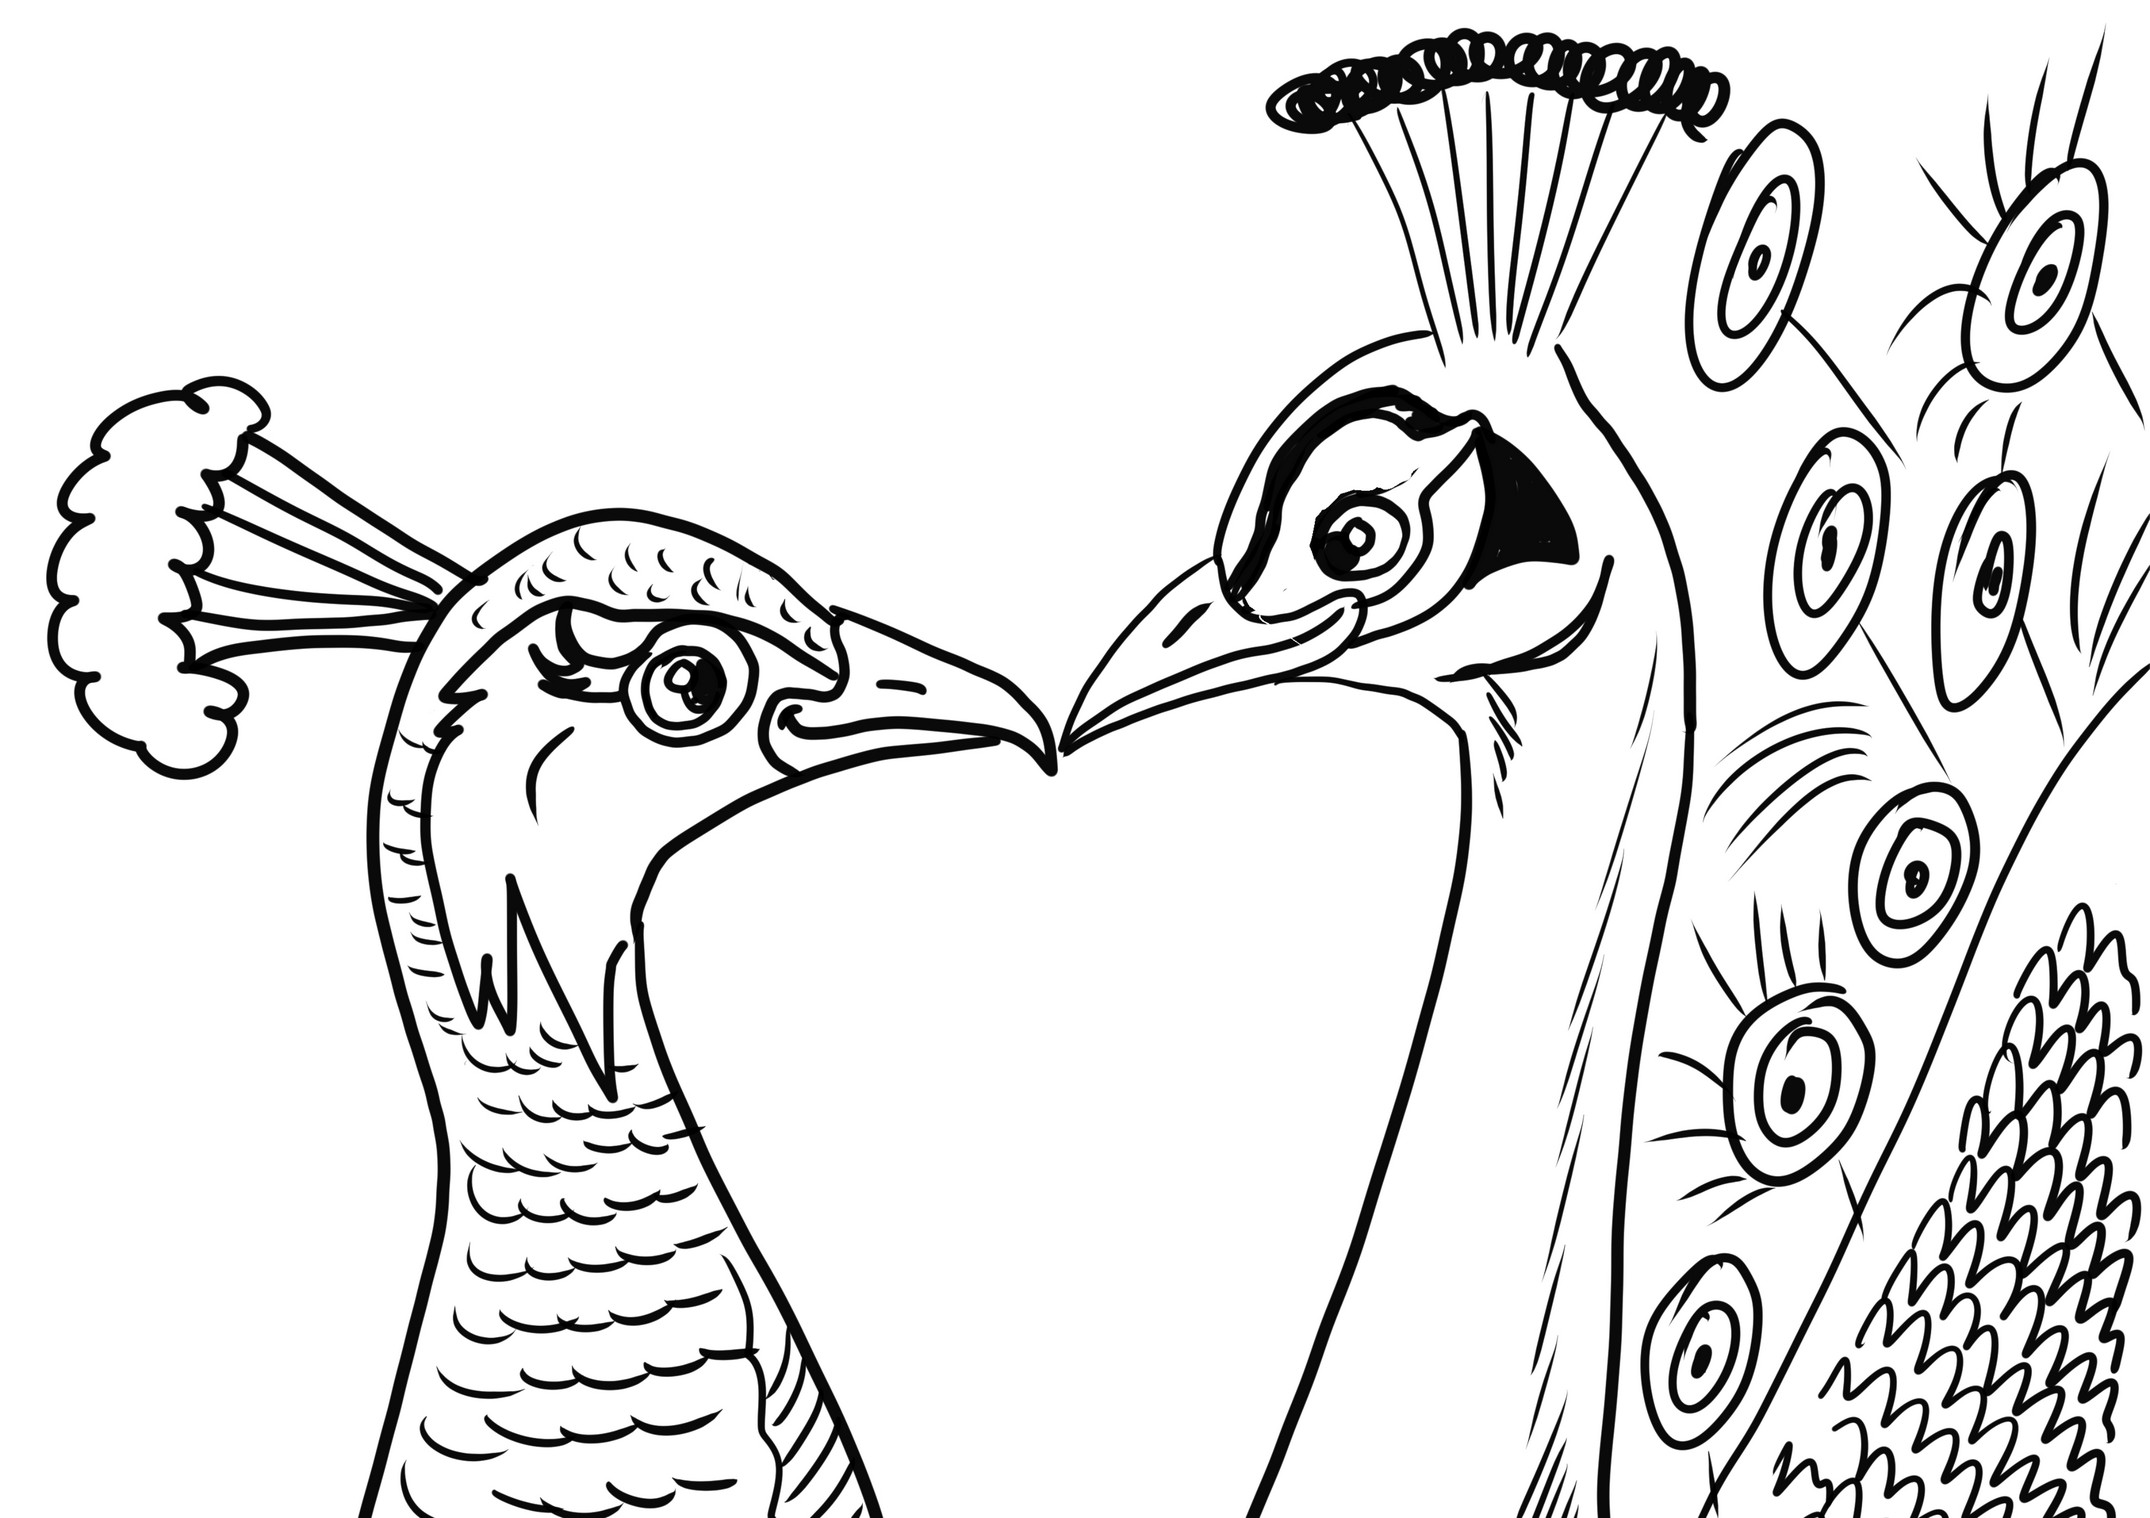 Målarbild av förälskade påfågelpar